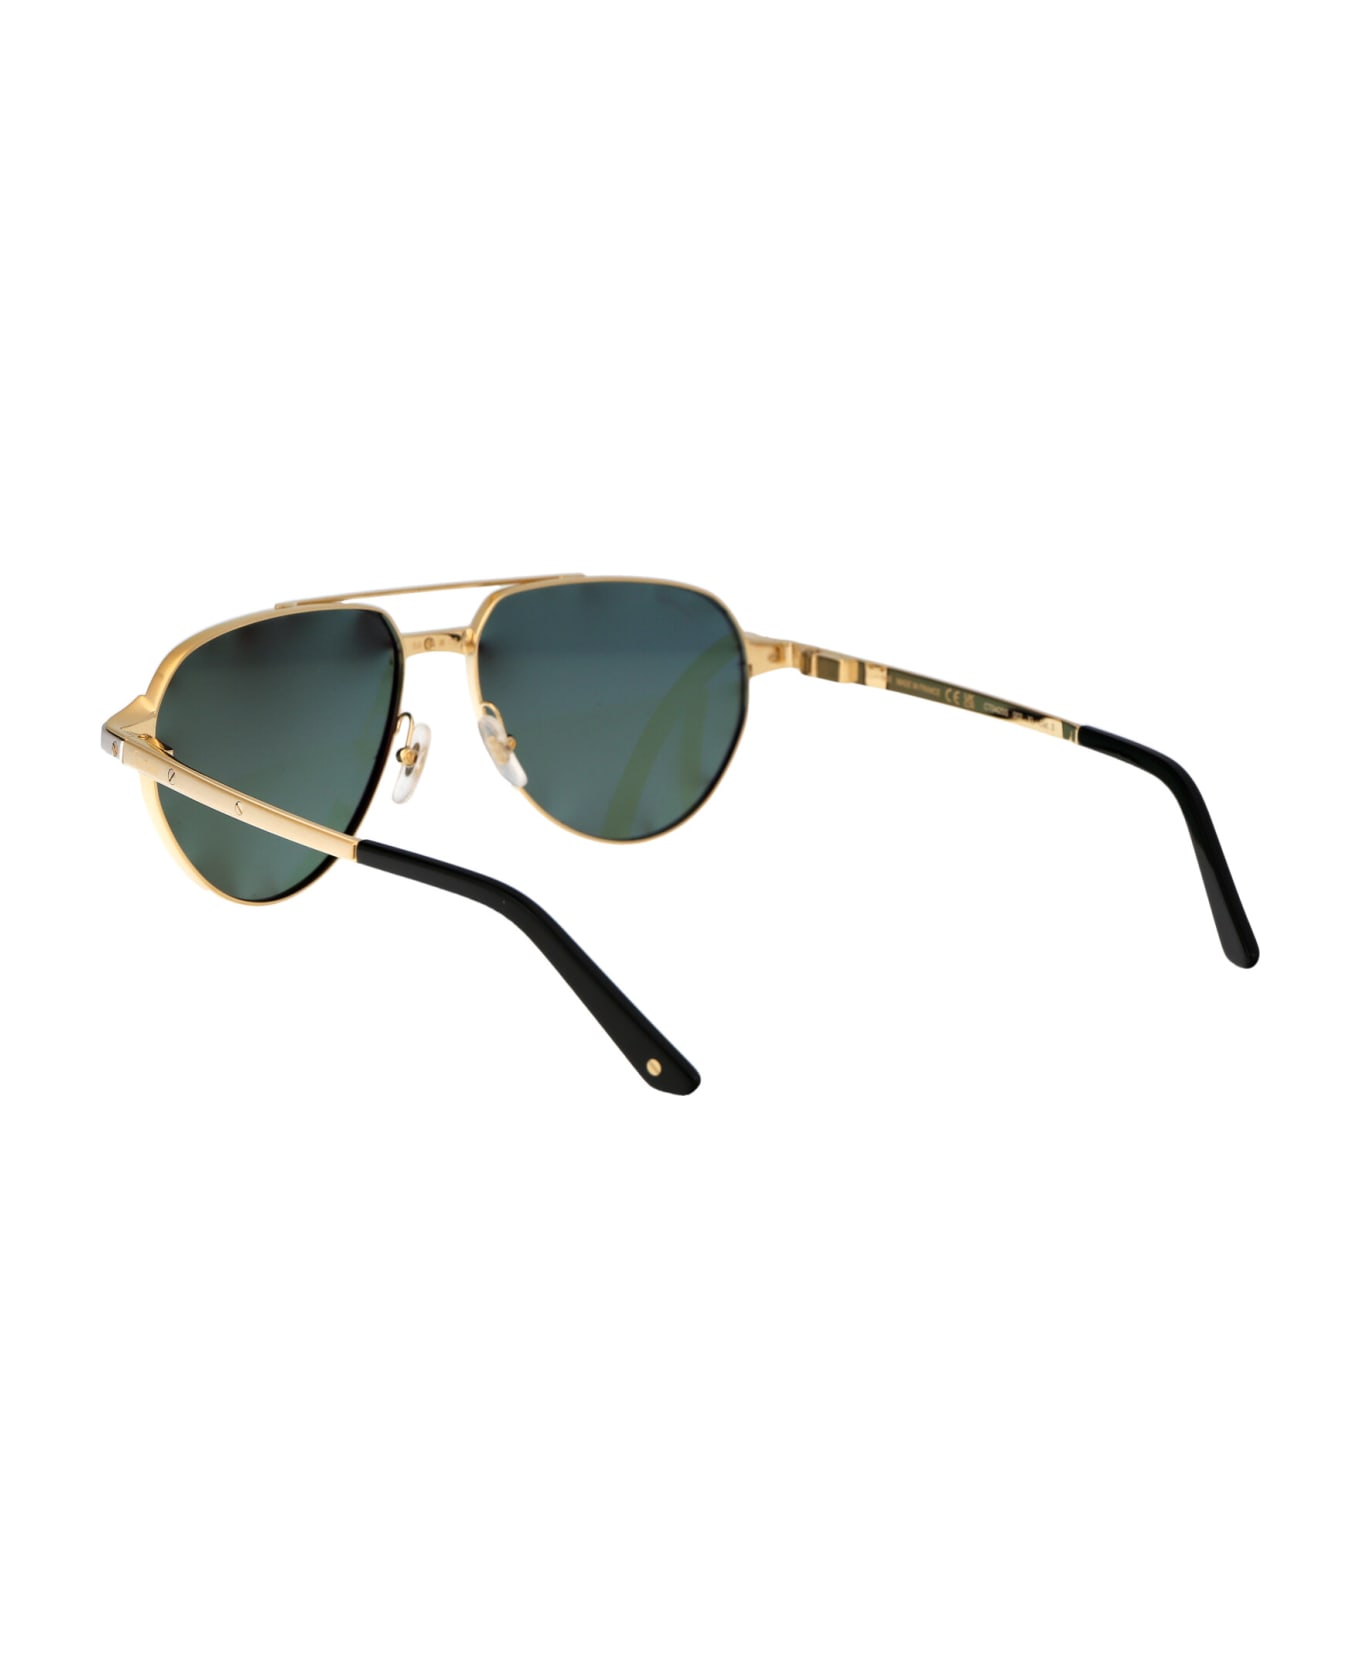 Cartier Eyewear Ct0425s Sunglasses - 002 GOLD GOLD GREEN